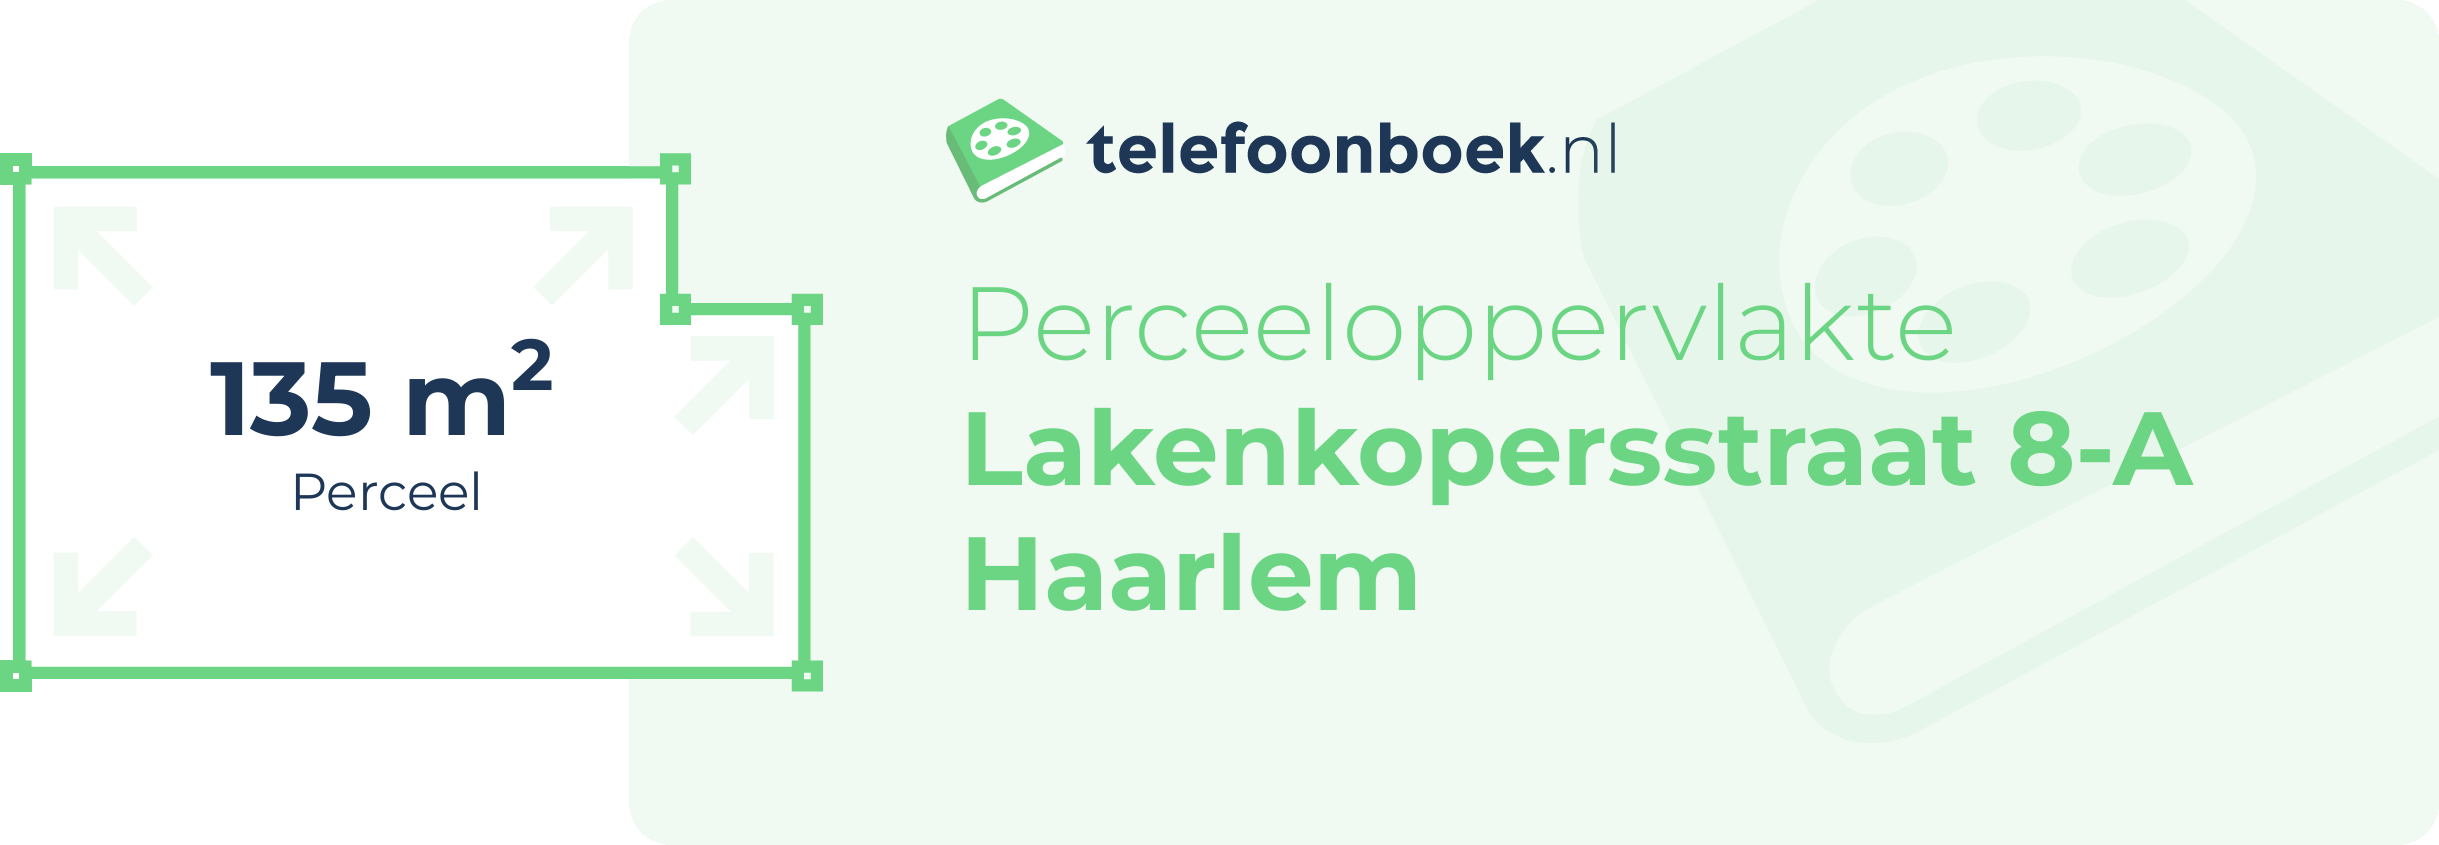 Perceeloppervlakte Lakenkopersstraat 8-A Haarlem